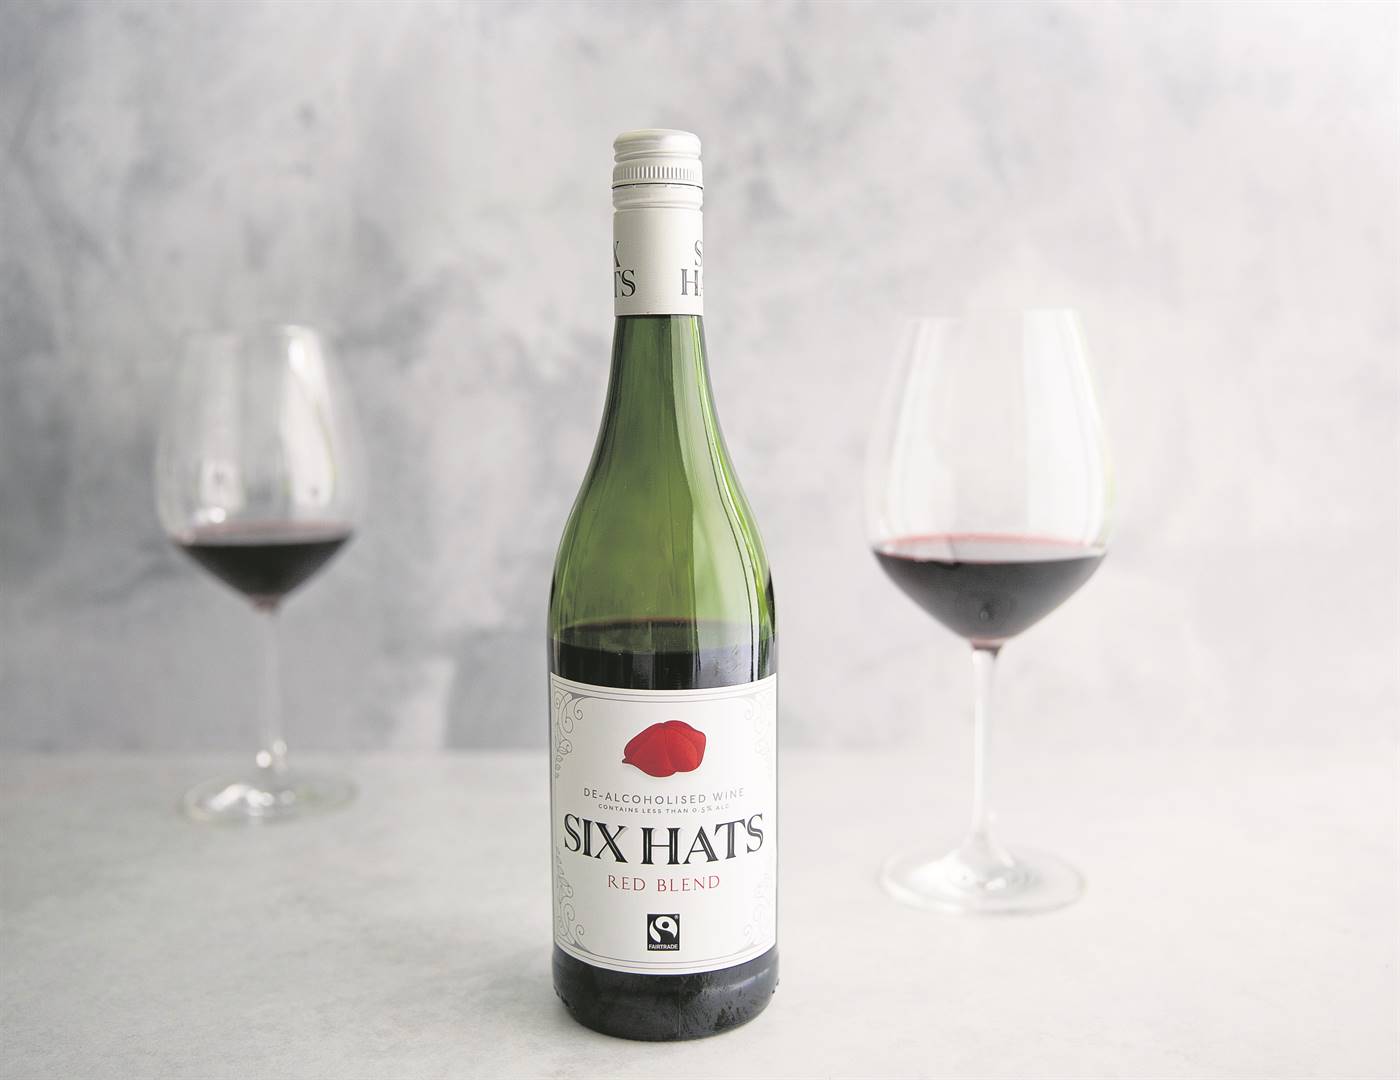 Piekenierskloof Wines het onlangs twee gedealkoholiseerde wyne by hul Six Hats-reeks gevoeg.Foto: VERSKAF